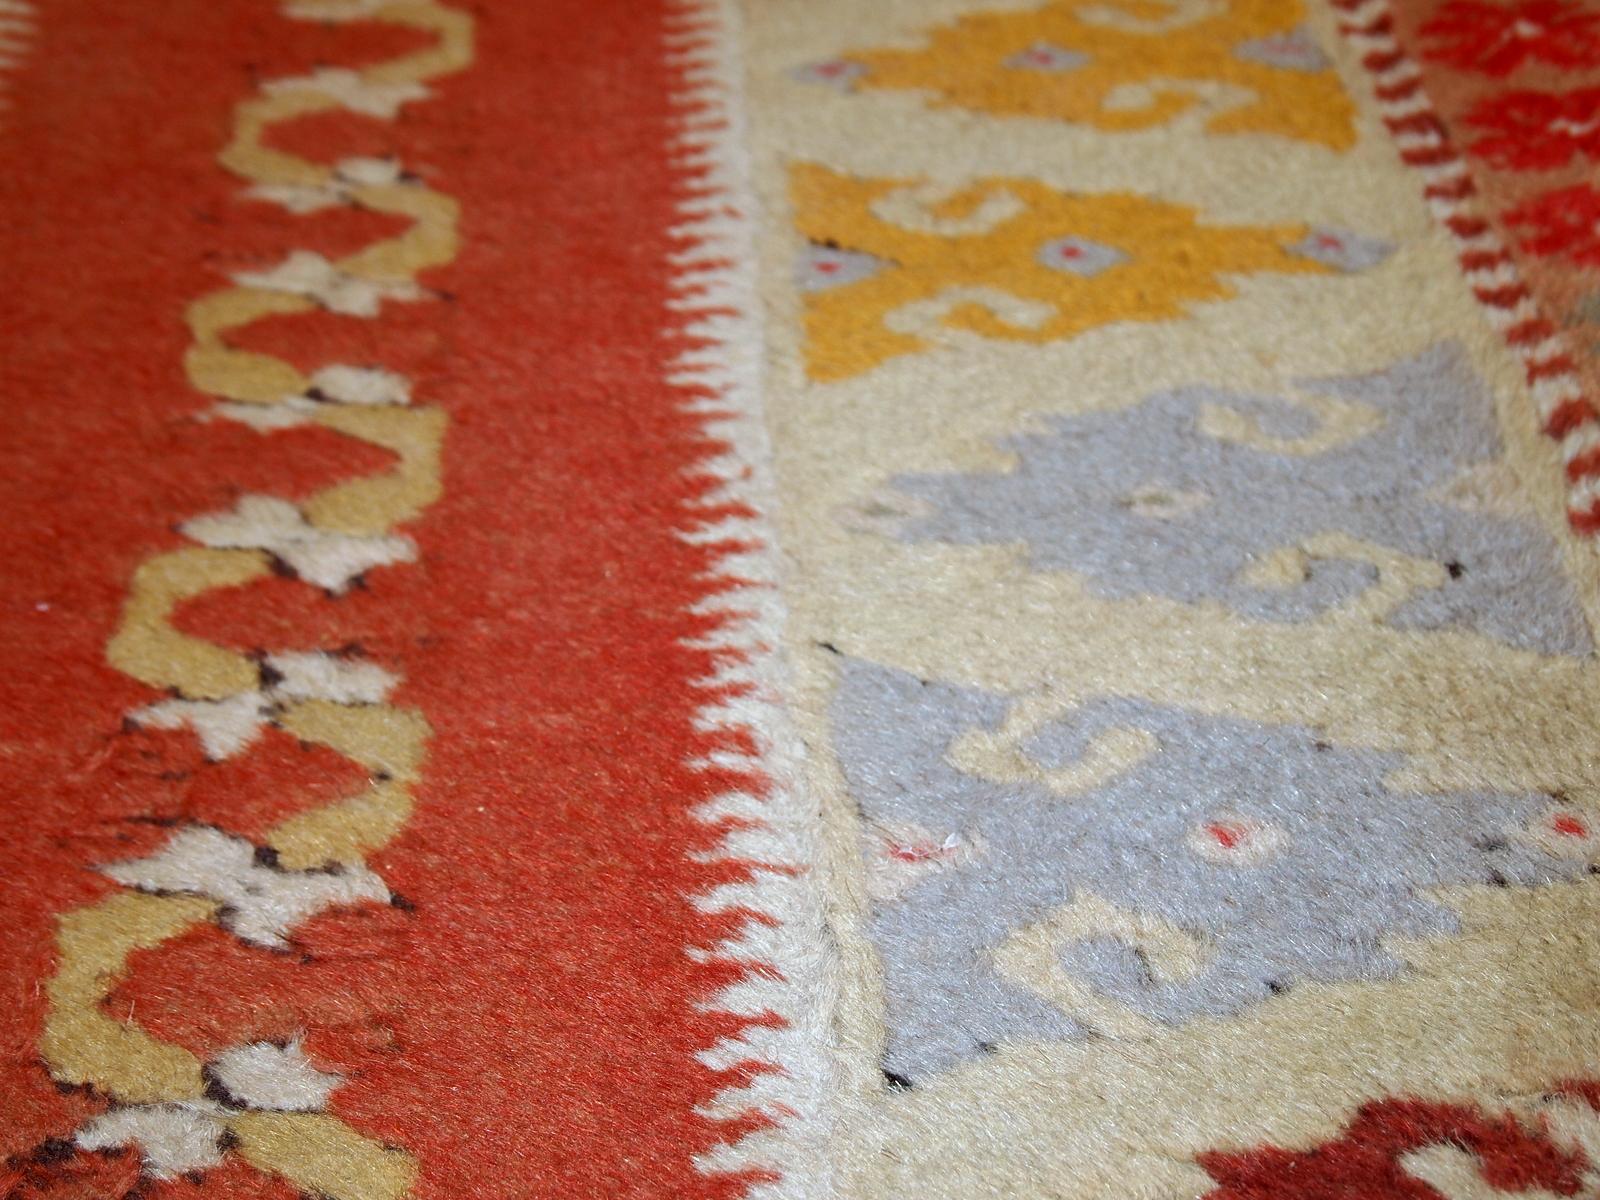 Handmade vintage Turkish Melas runner made in wool. The rug is from midcentury, in original good condition.

- Condition: Original good,

- circa 1950s,

- Size: 2.5' x 9' (76cm x 267cm),

- Material: Wool,

- Country of origin: